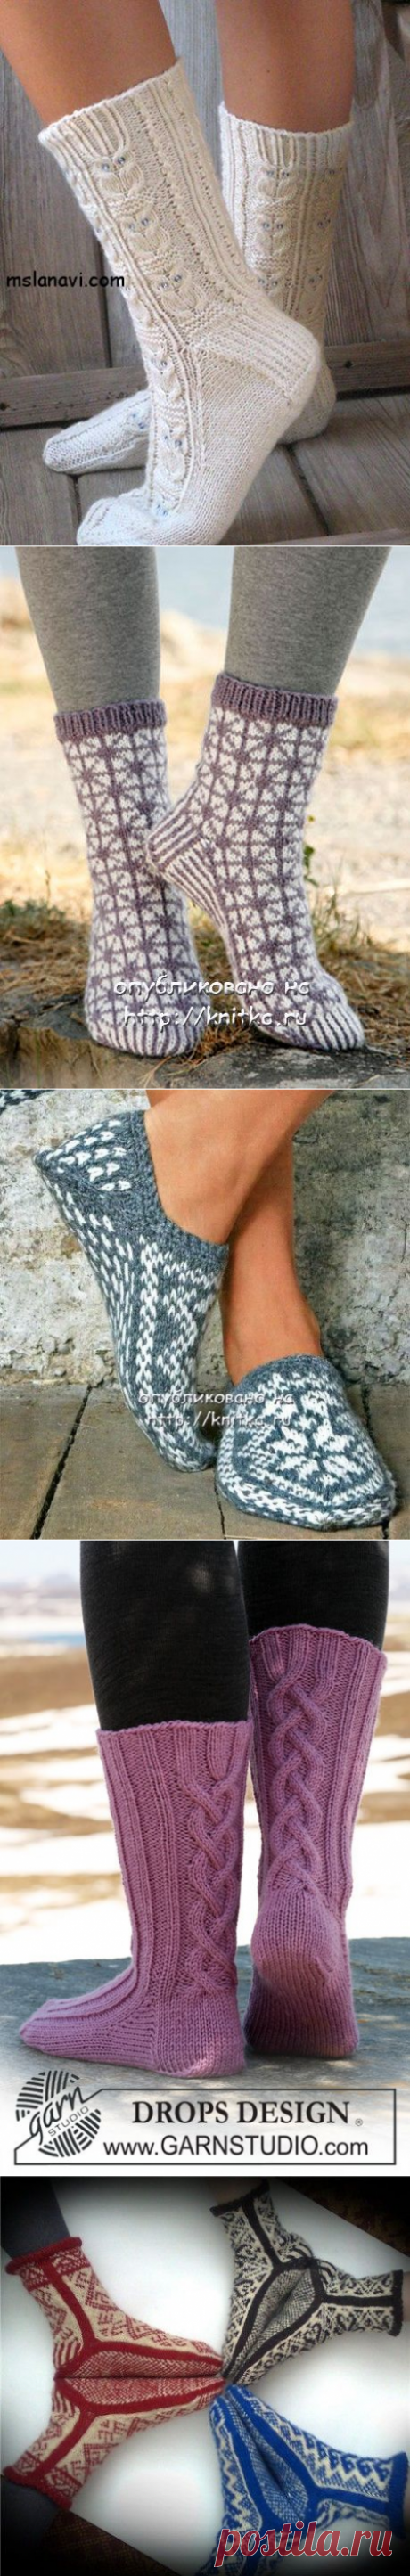 Вязаные носки спицами. Подборка из 17 моделей вязаных носков спицами на knitka.ru, Вязание для детей